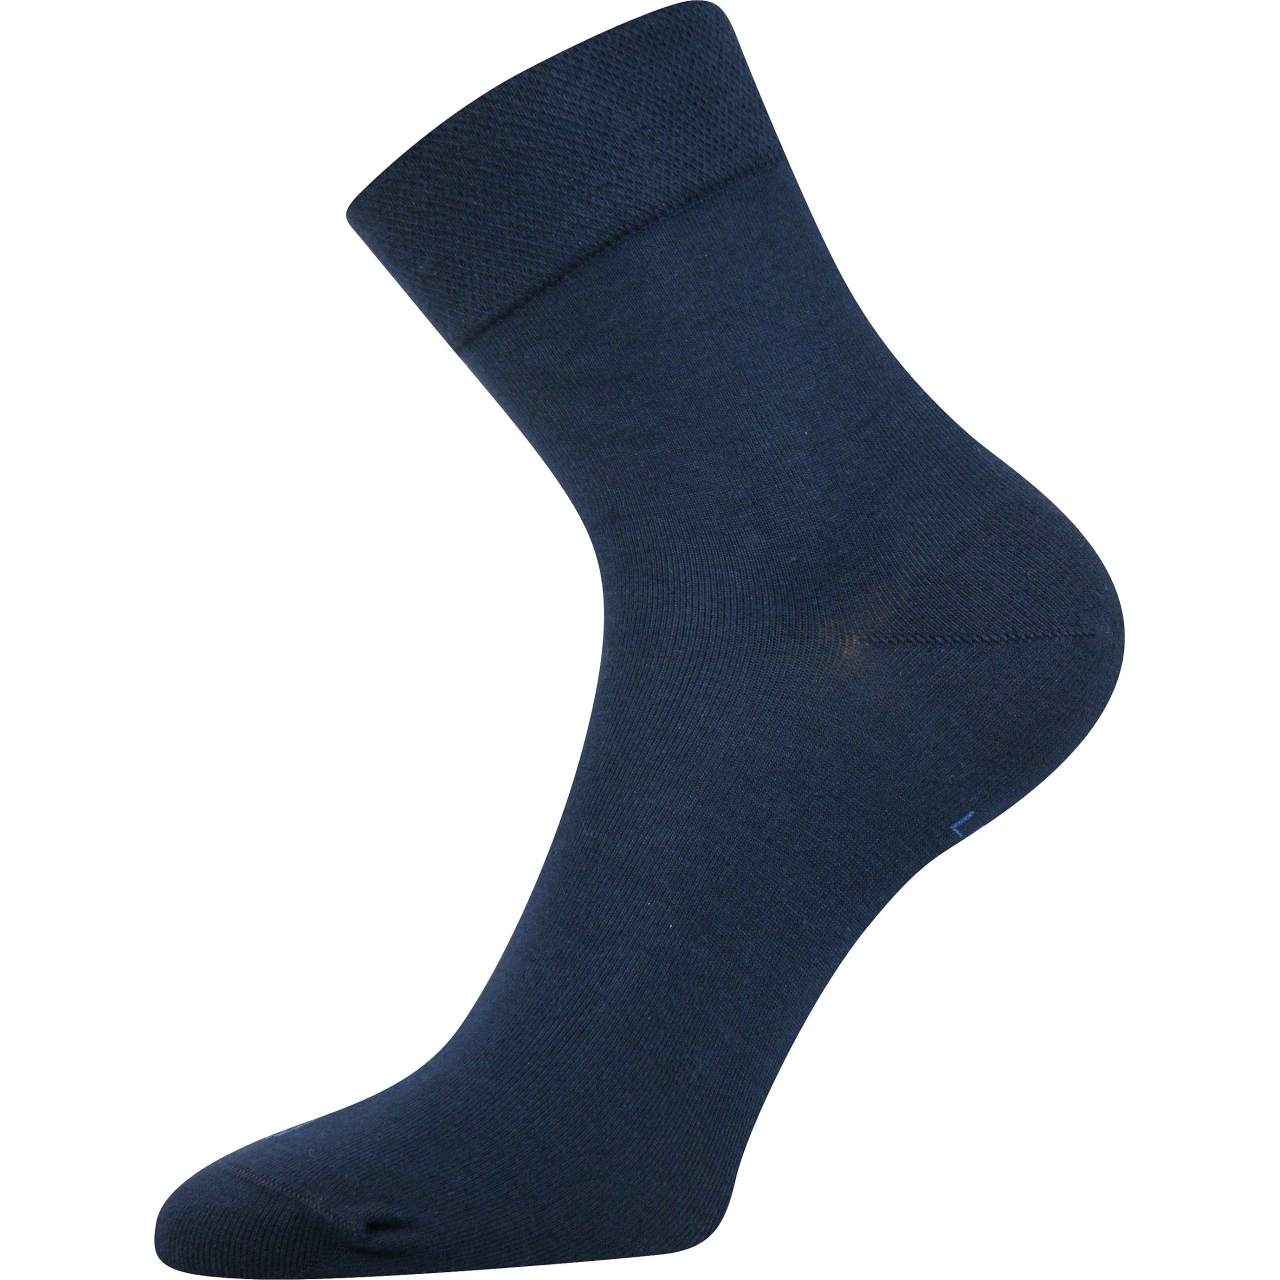 Ponožky dámské Lonka Fanera - tmavě modré, 39-42